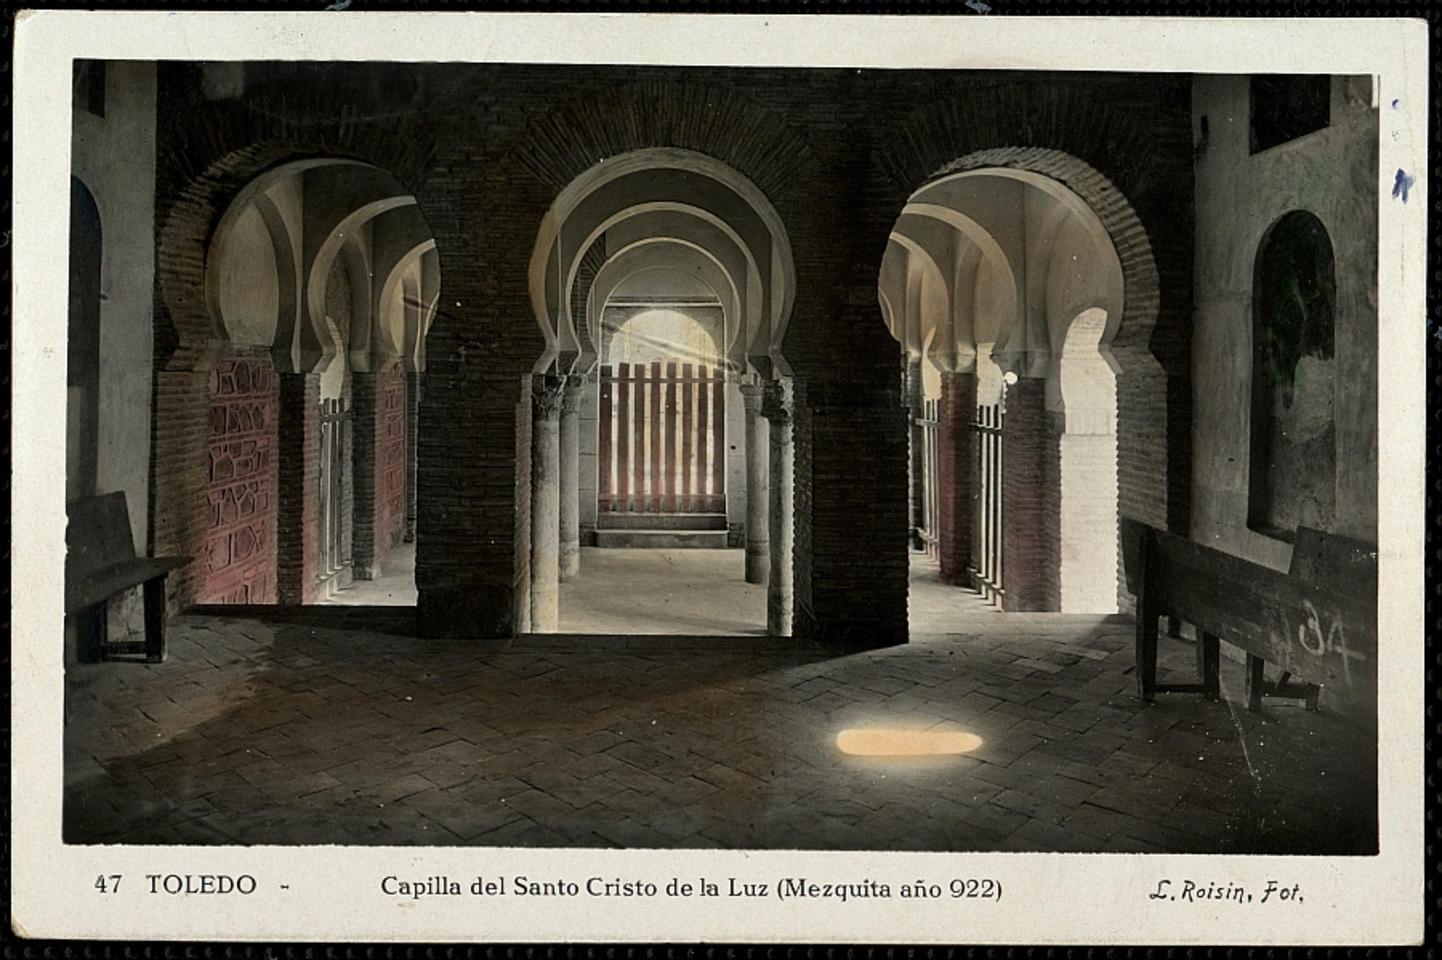 Toledo : Capilla del Santo Cristo de la Luz (Mezquita año 922) / L. Roisin, Fot.-. [Imagen]